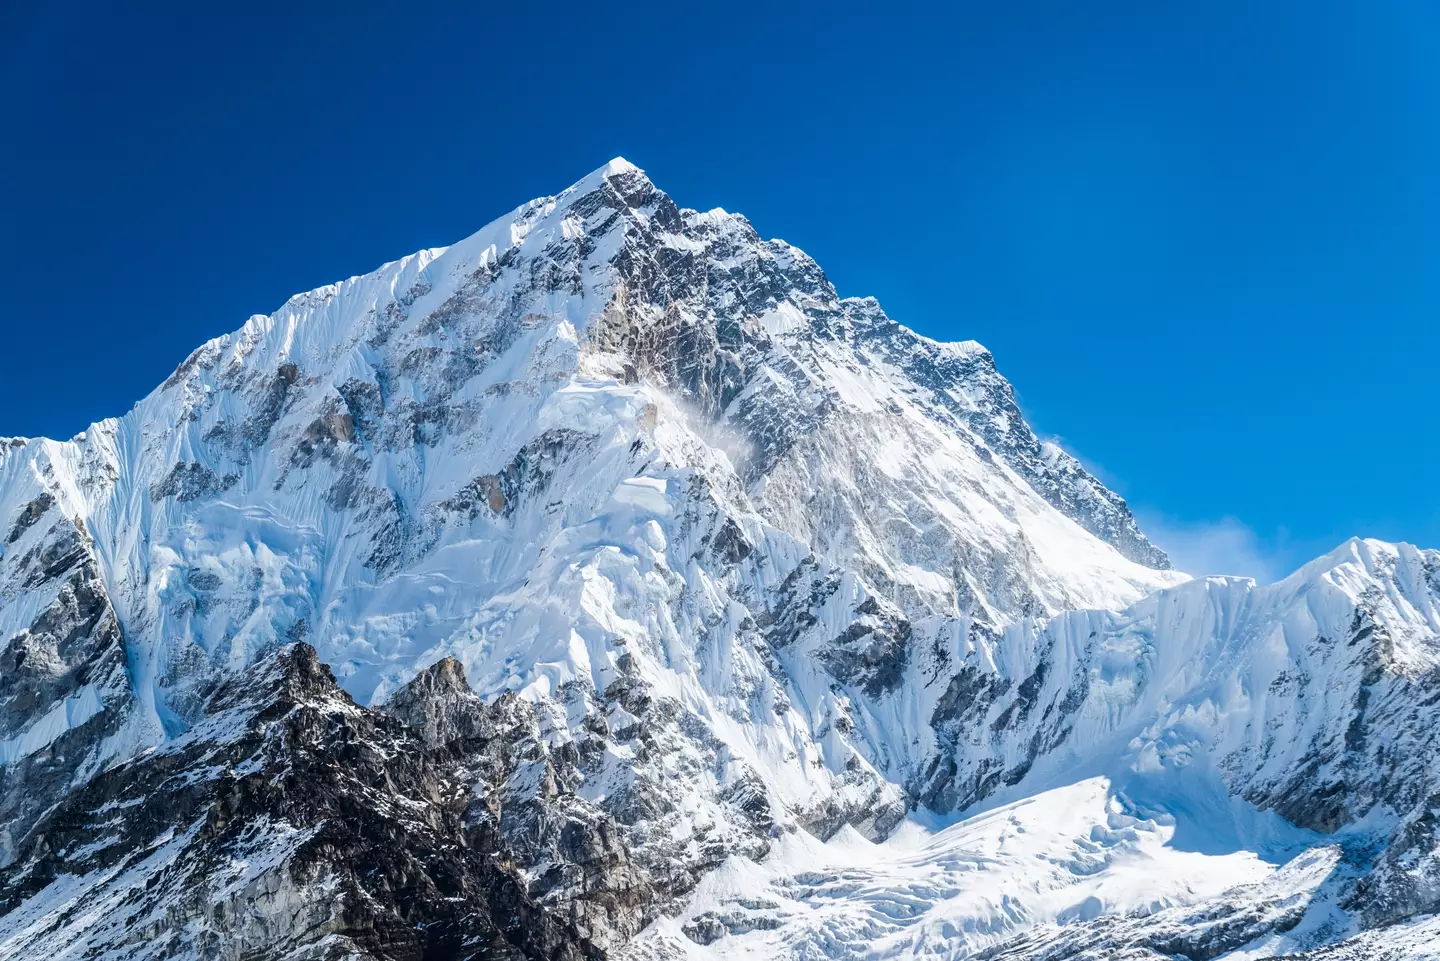 Mount Everest is the highest peak on Earth.